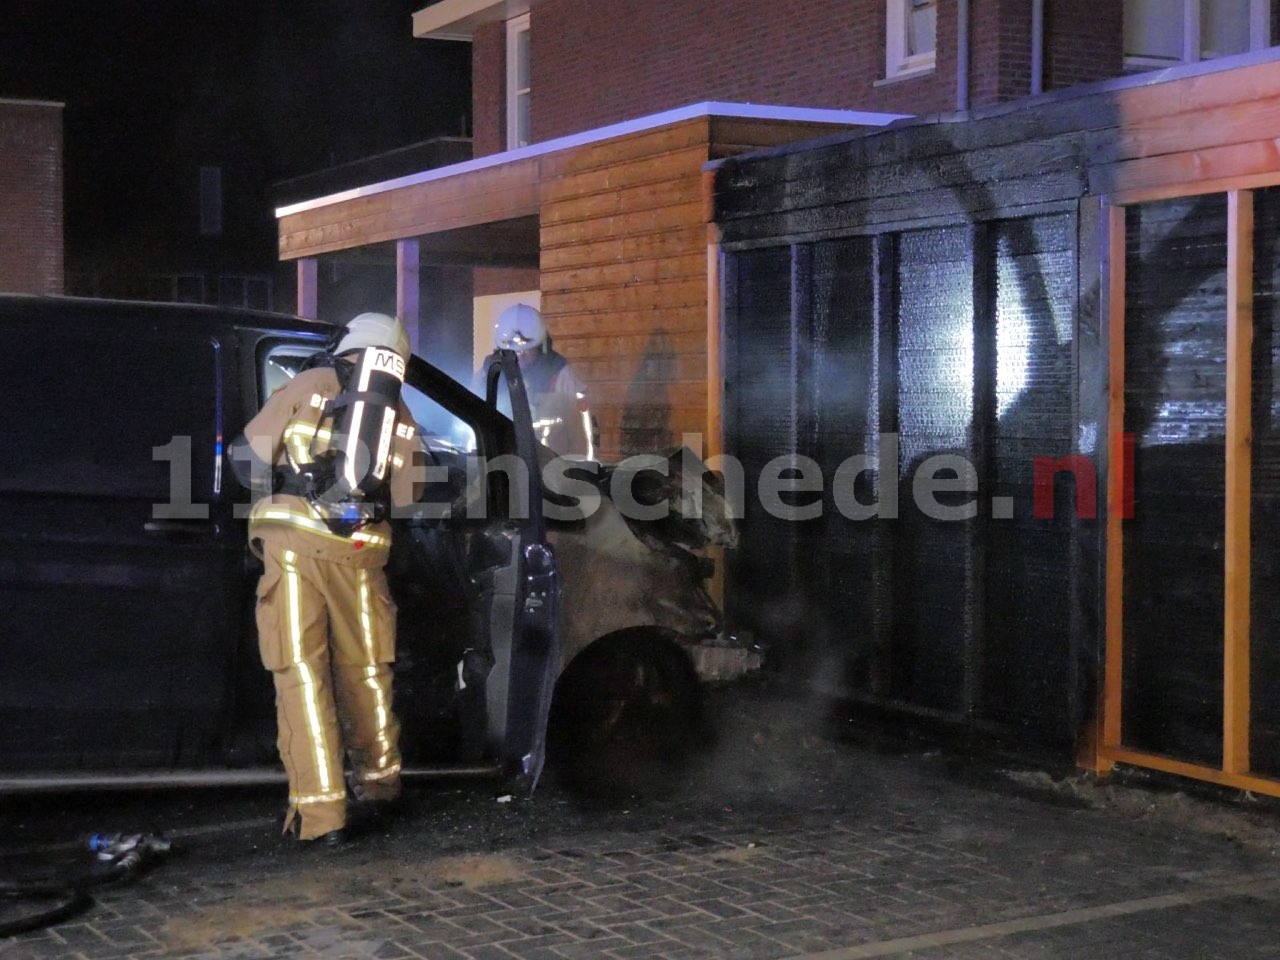 Video: Busje verwoest door brand in Enschede; politie doet onderzoek